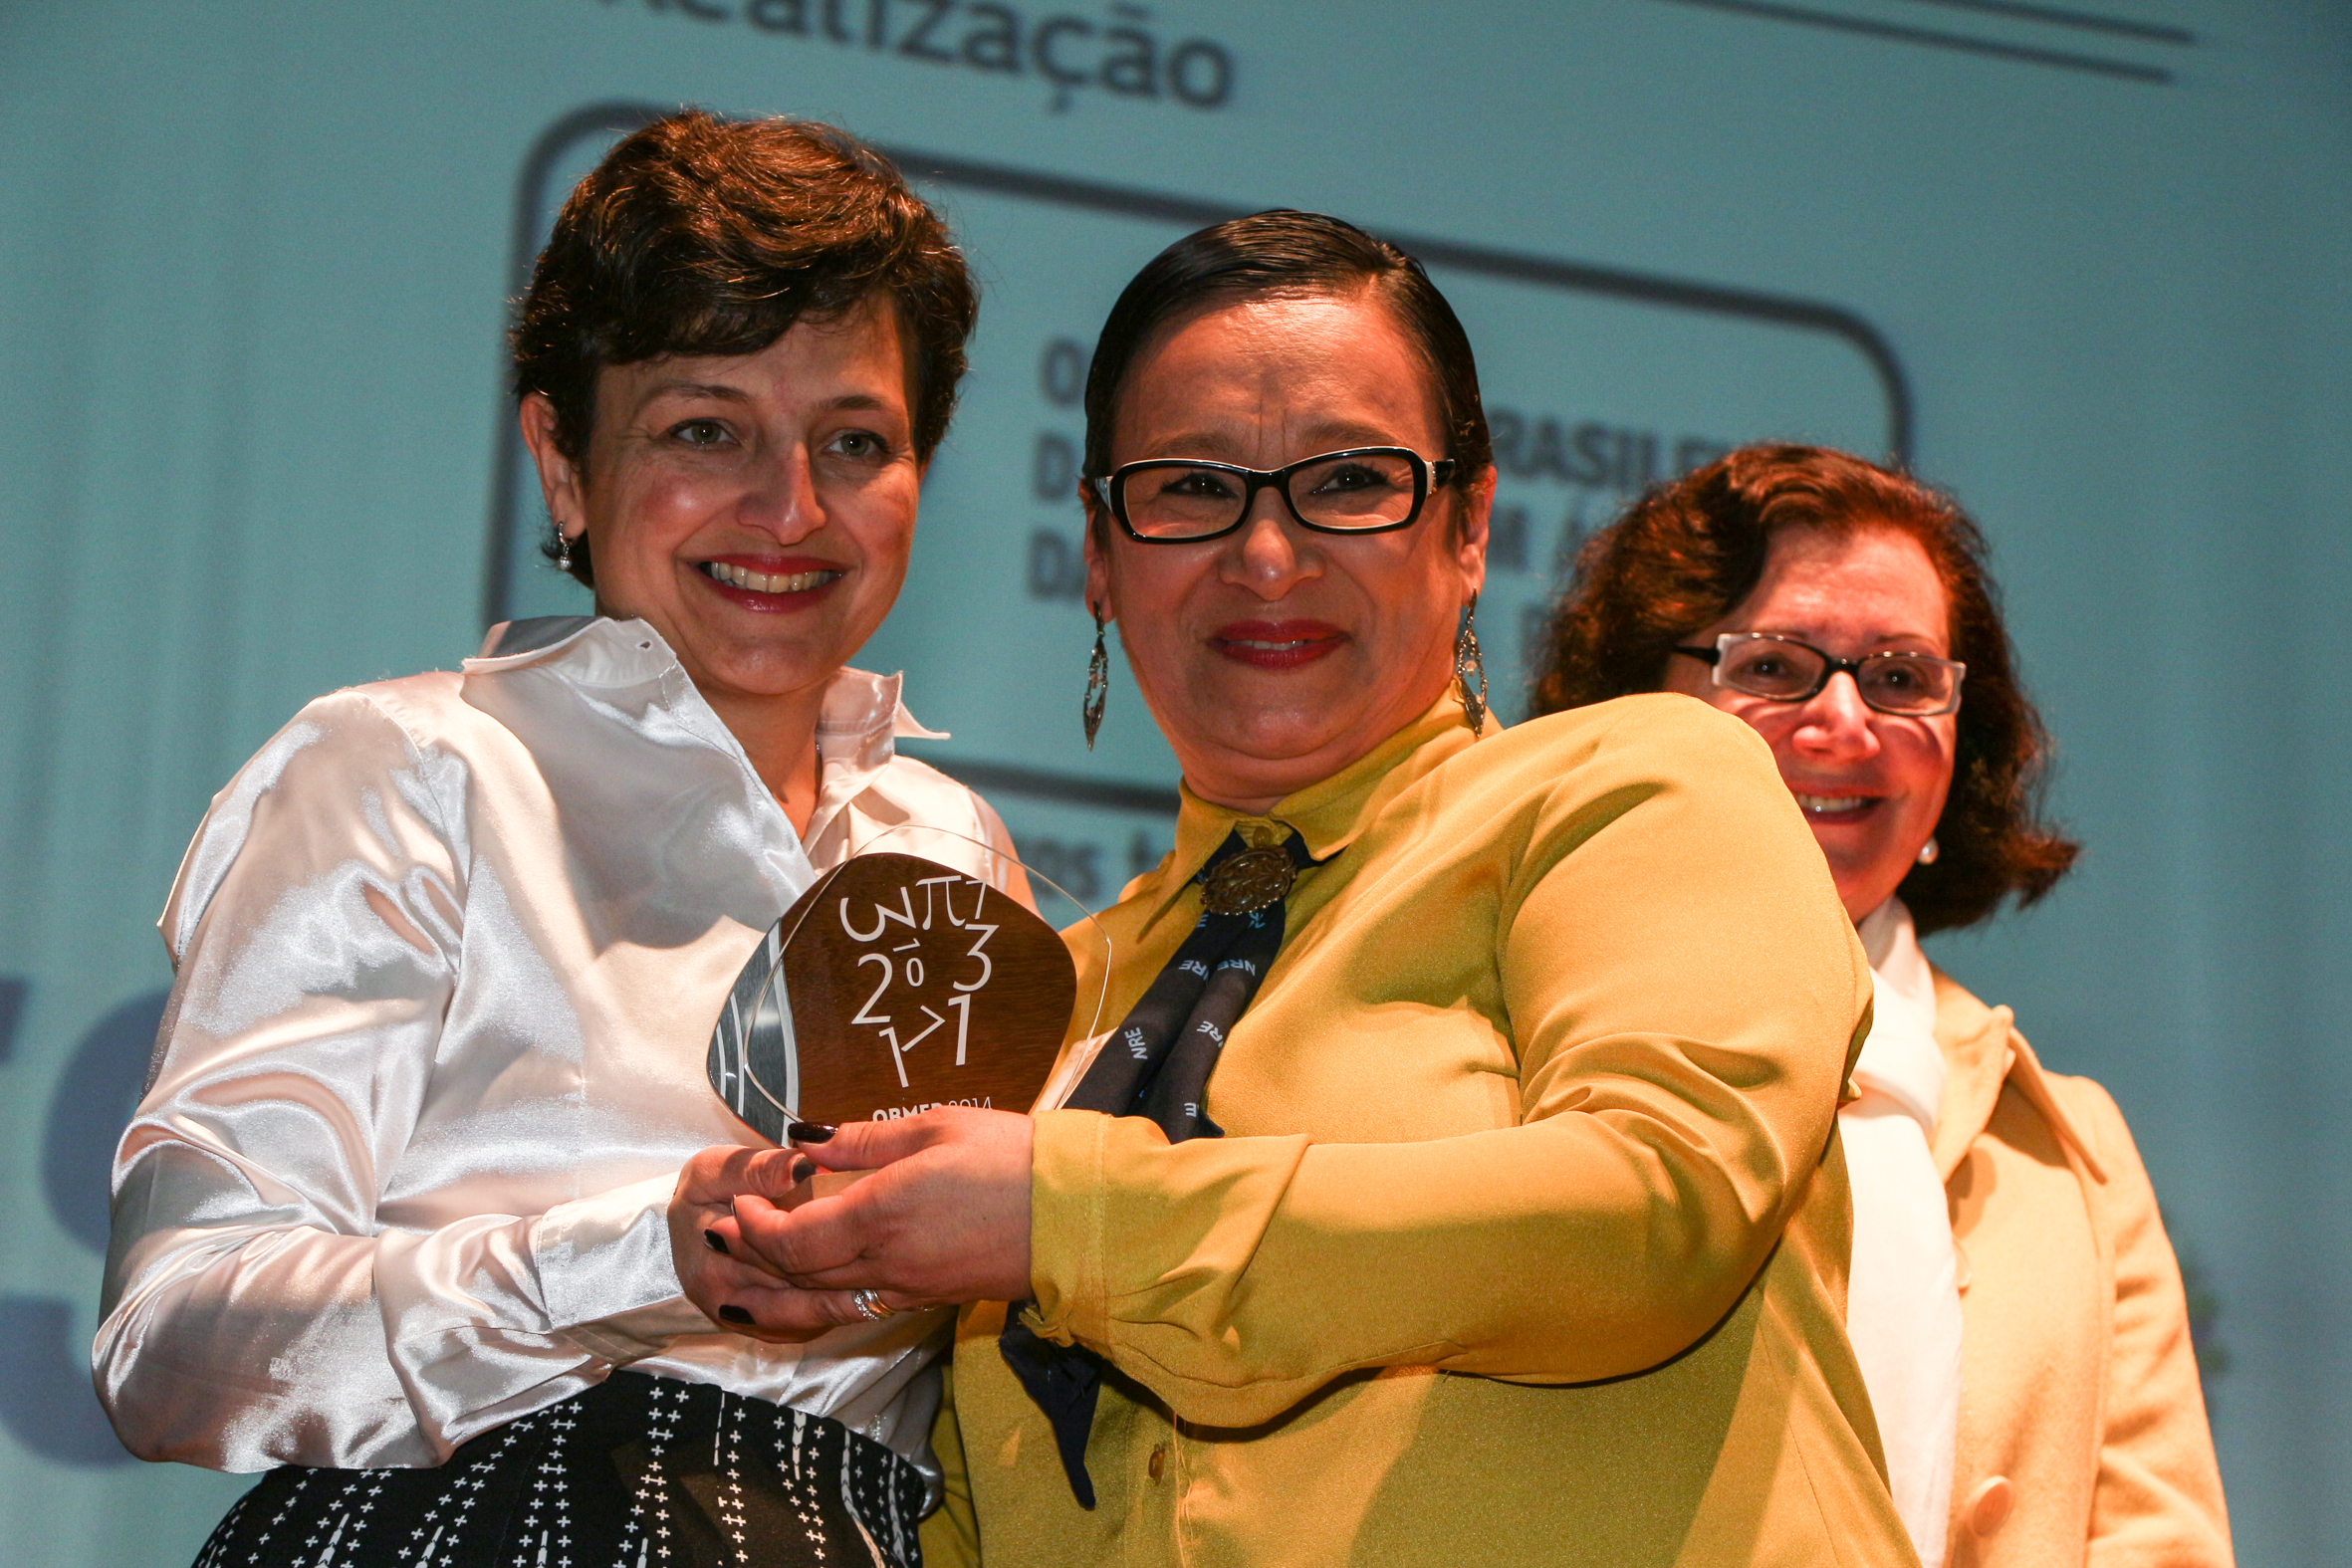 Entrega do Troféu a Representante da E. E. Medalha Milagrosa - Tec. Reg.de Ponta Grossa Sandra